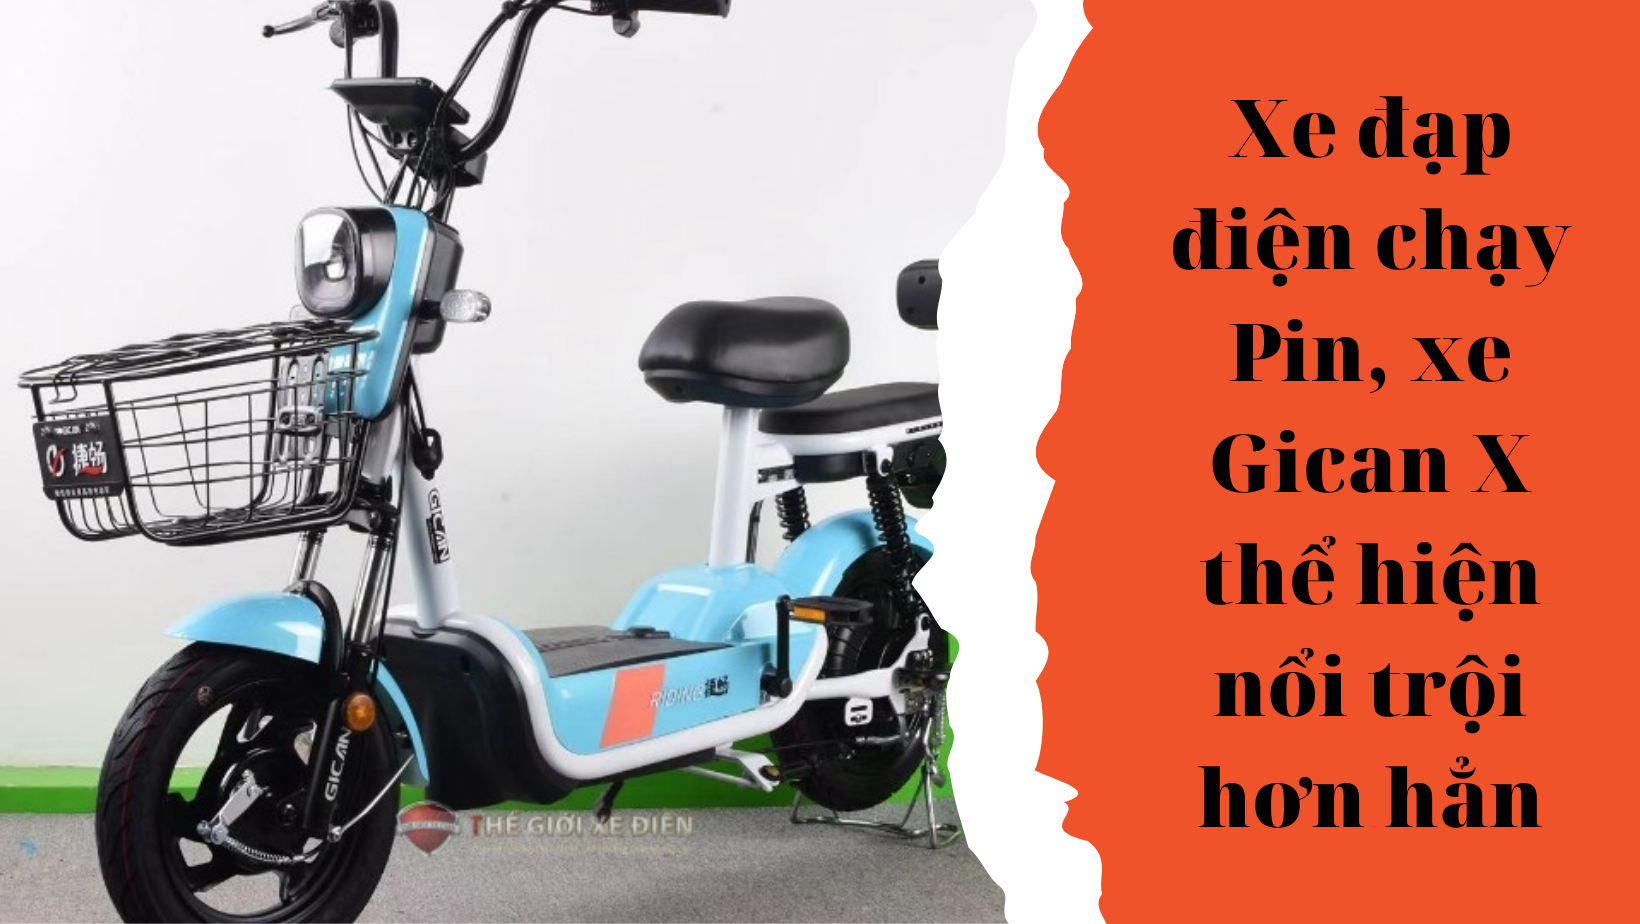 Xe đạp điện chạy Pin, xe Gican X thể hiện nổi trội hơn hẳn